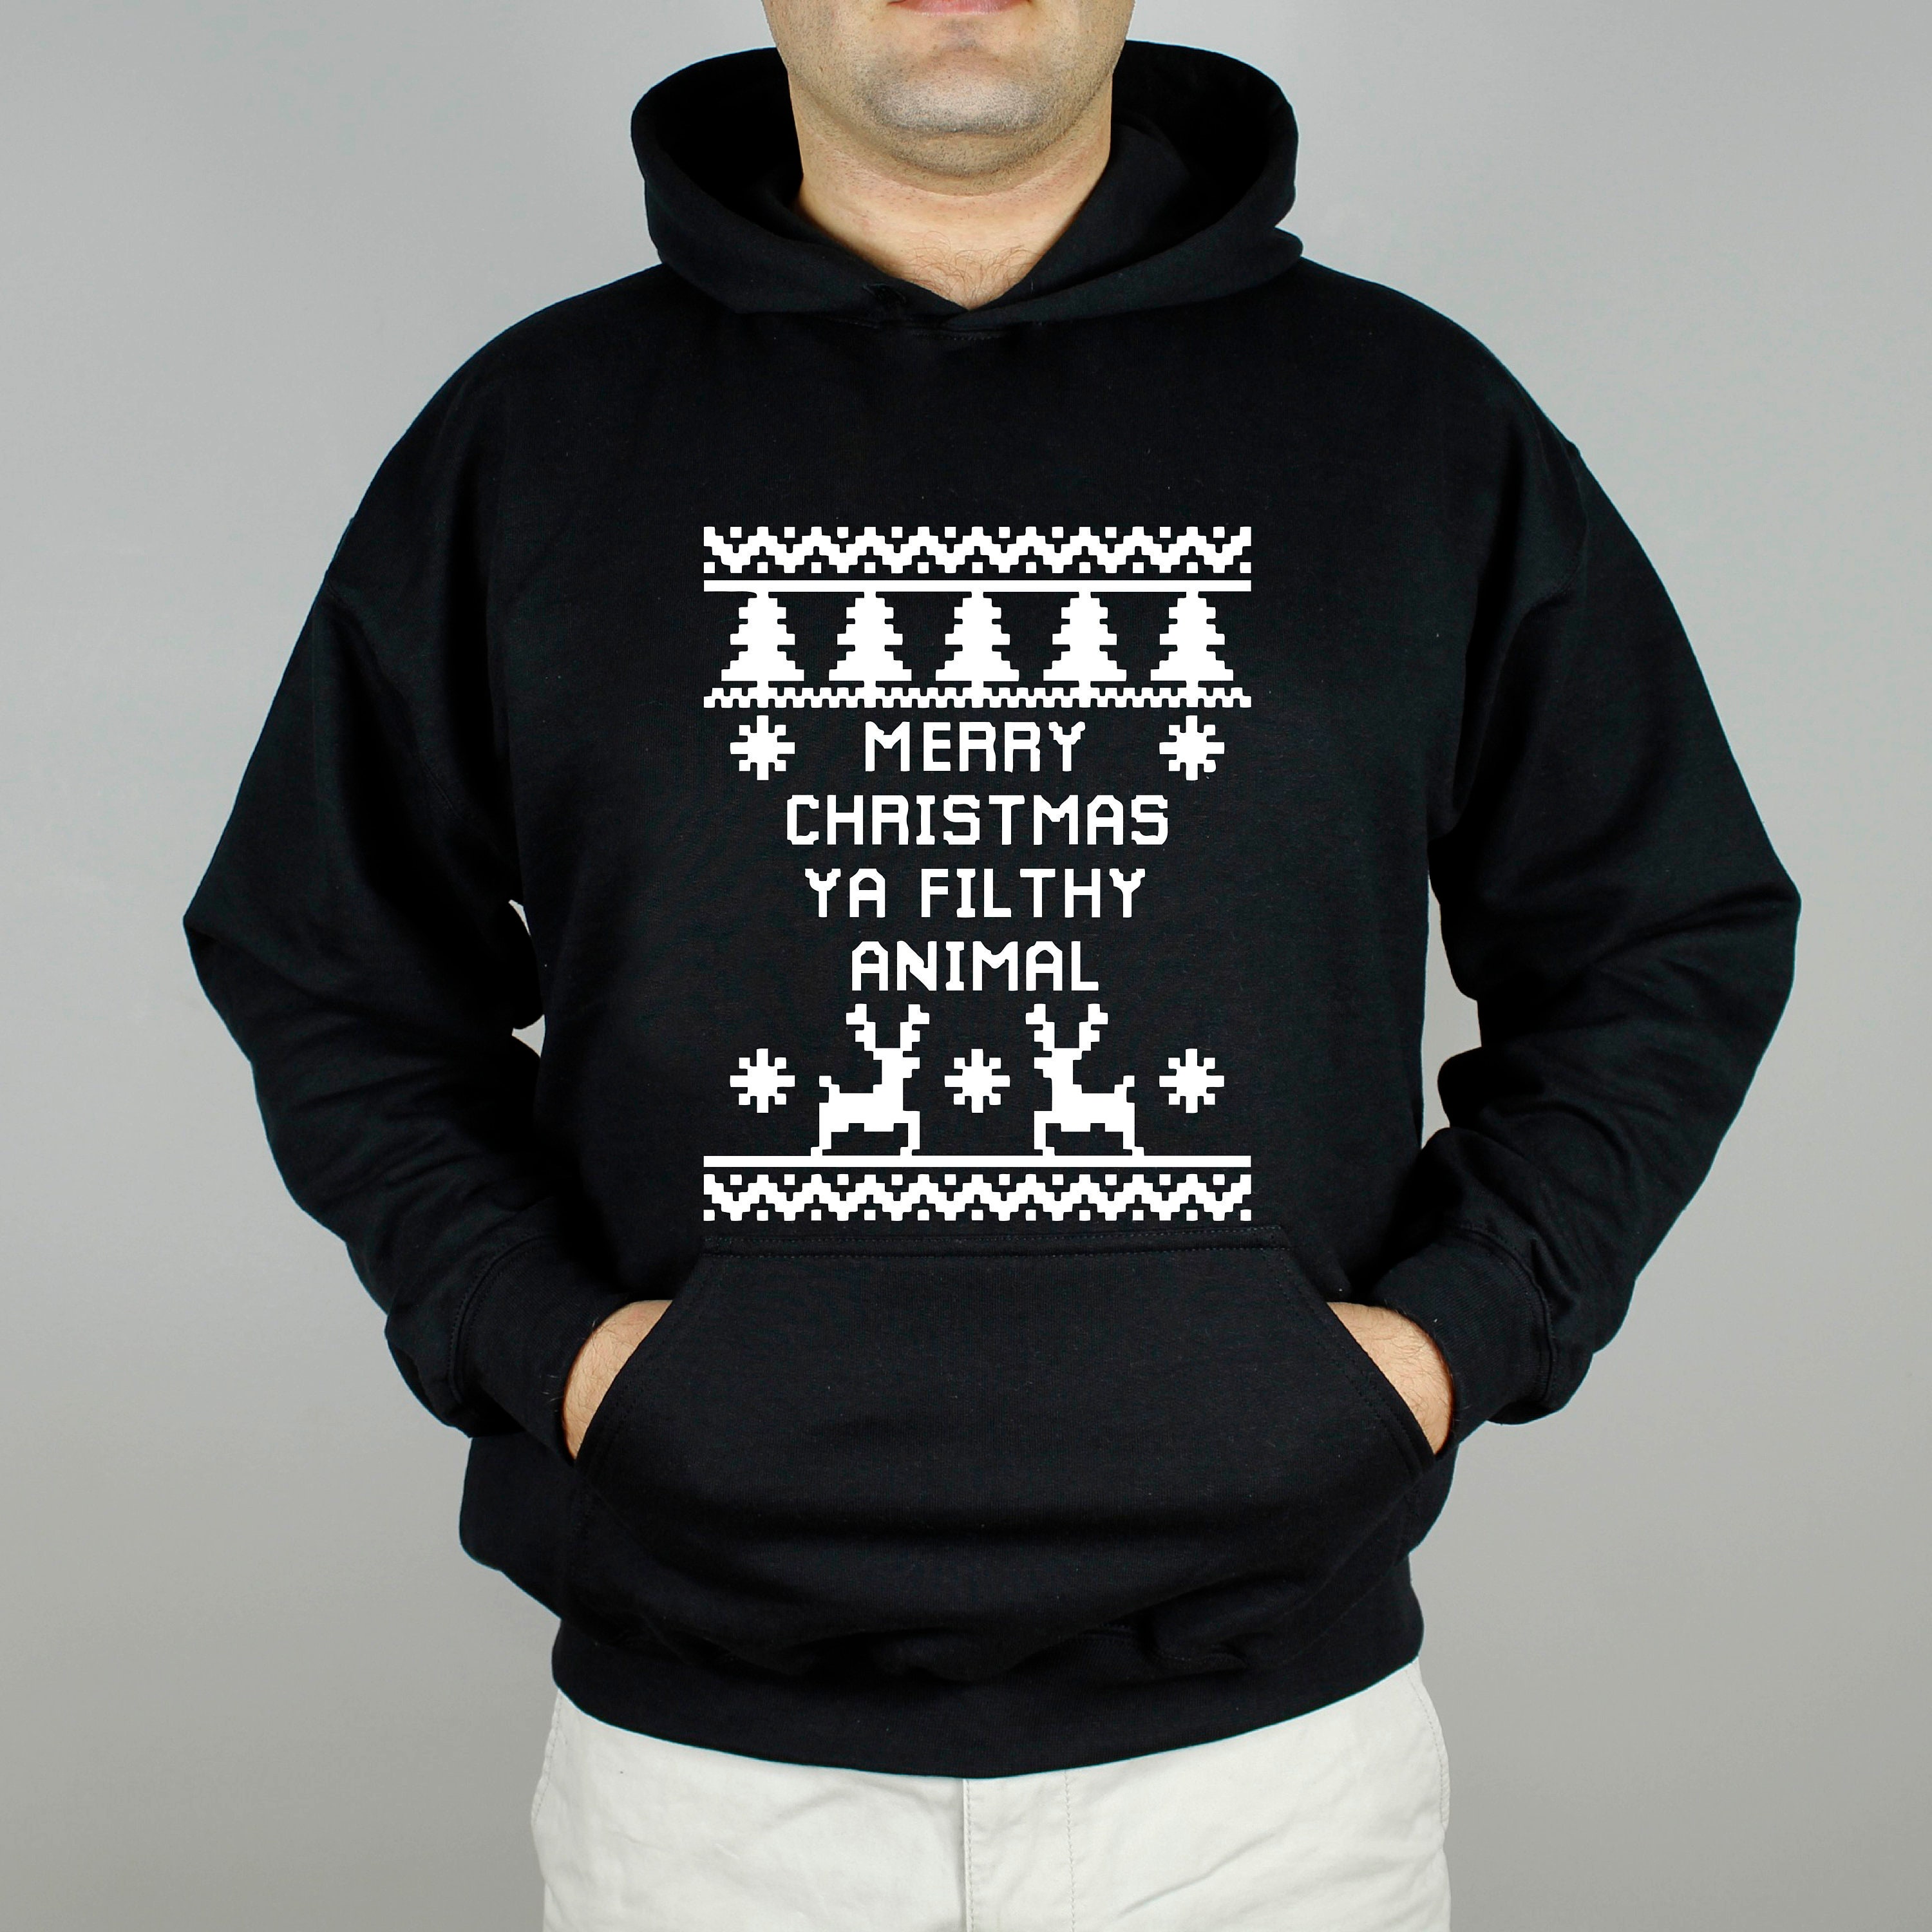 Discover Merry Christmas Ya Filthy Animal Sweatshirt,2022 Ugly Christmas Sweatshirt